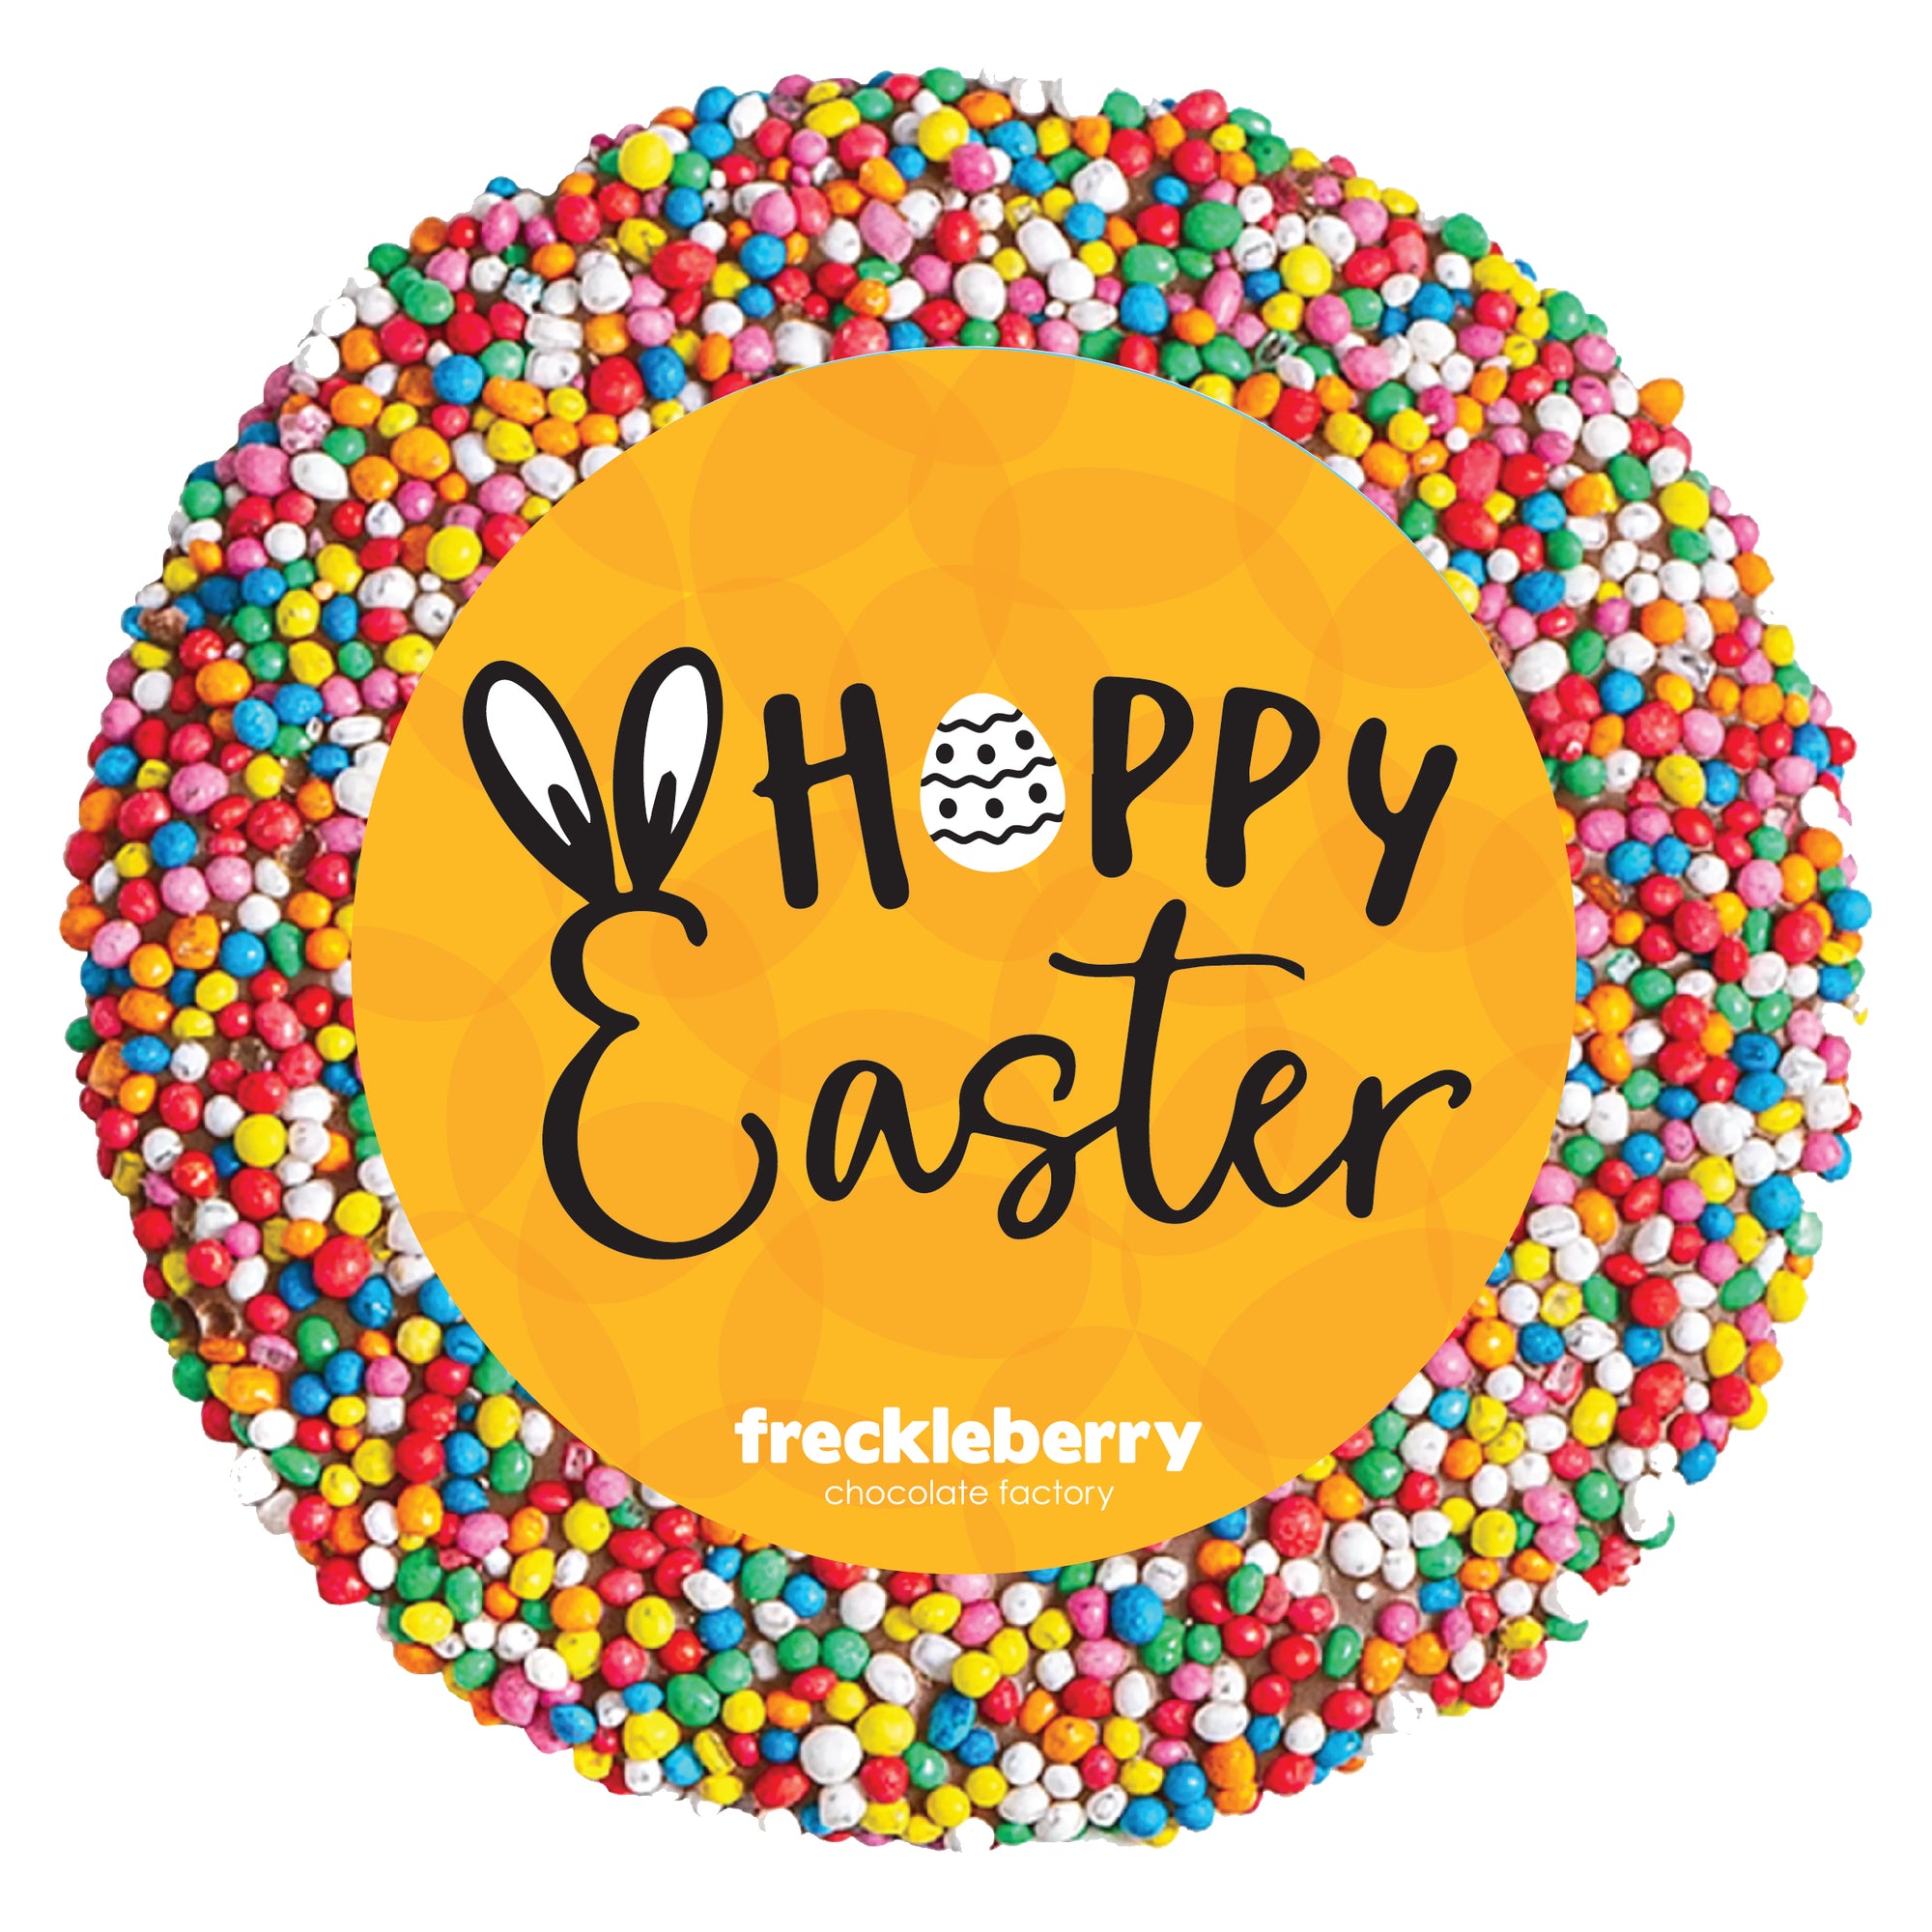 Easter Single Freckle 40g - Hoppy Easter